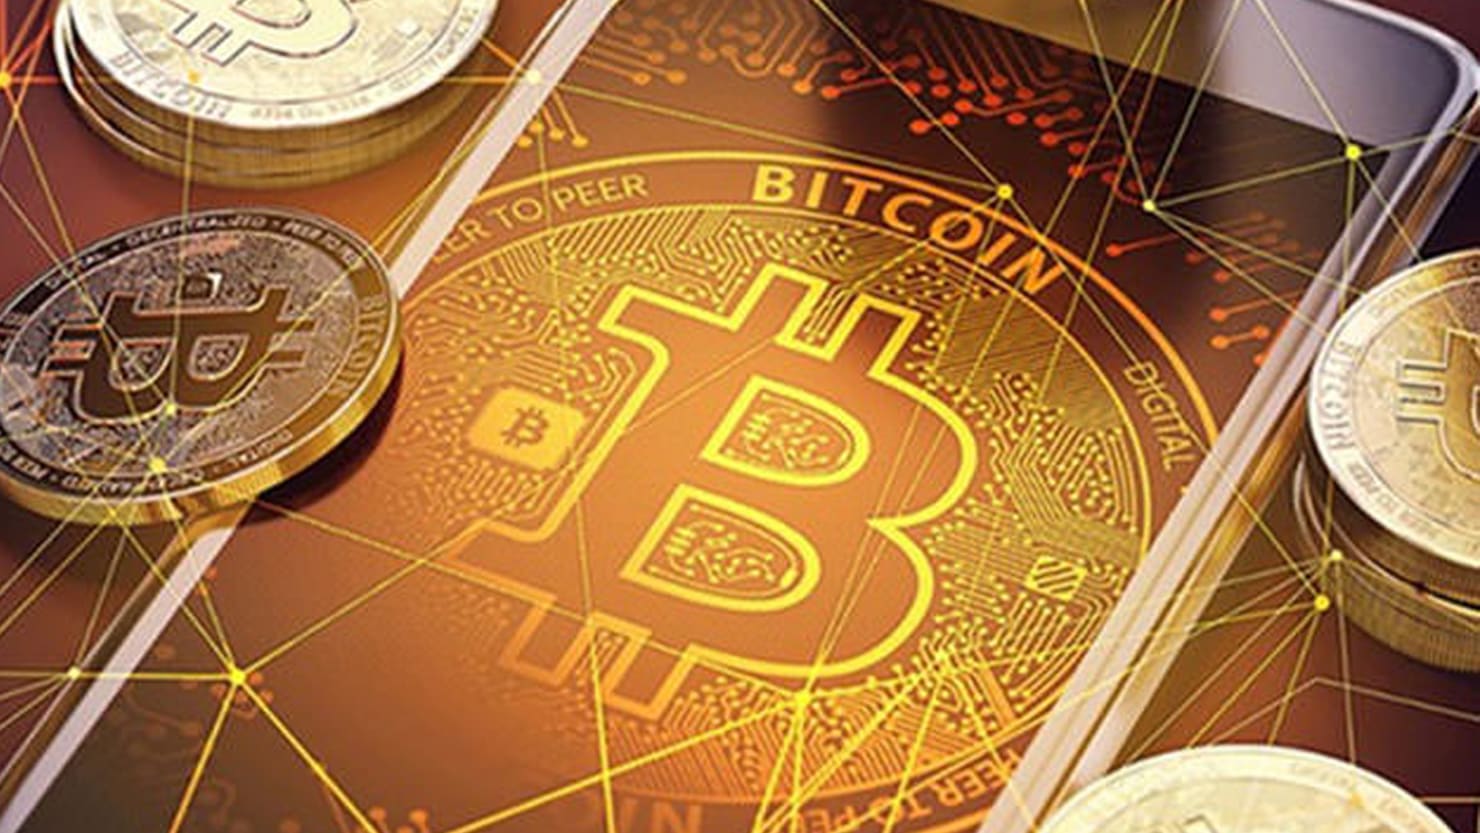 5.5 billion bitcoin movement